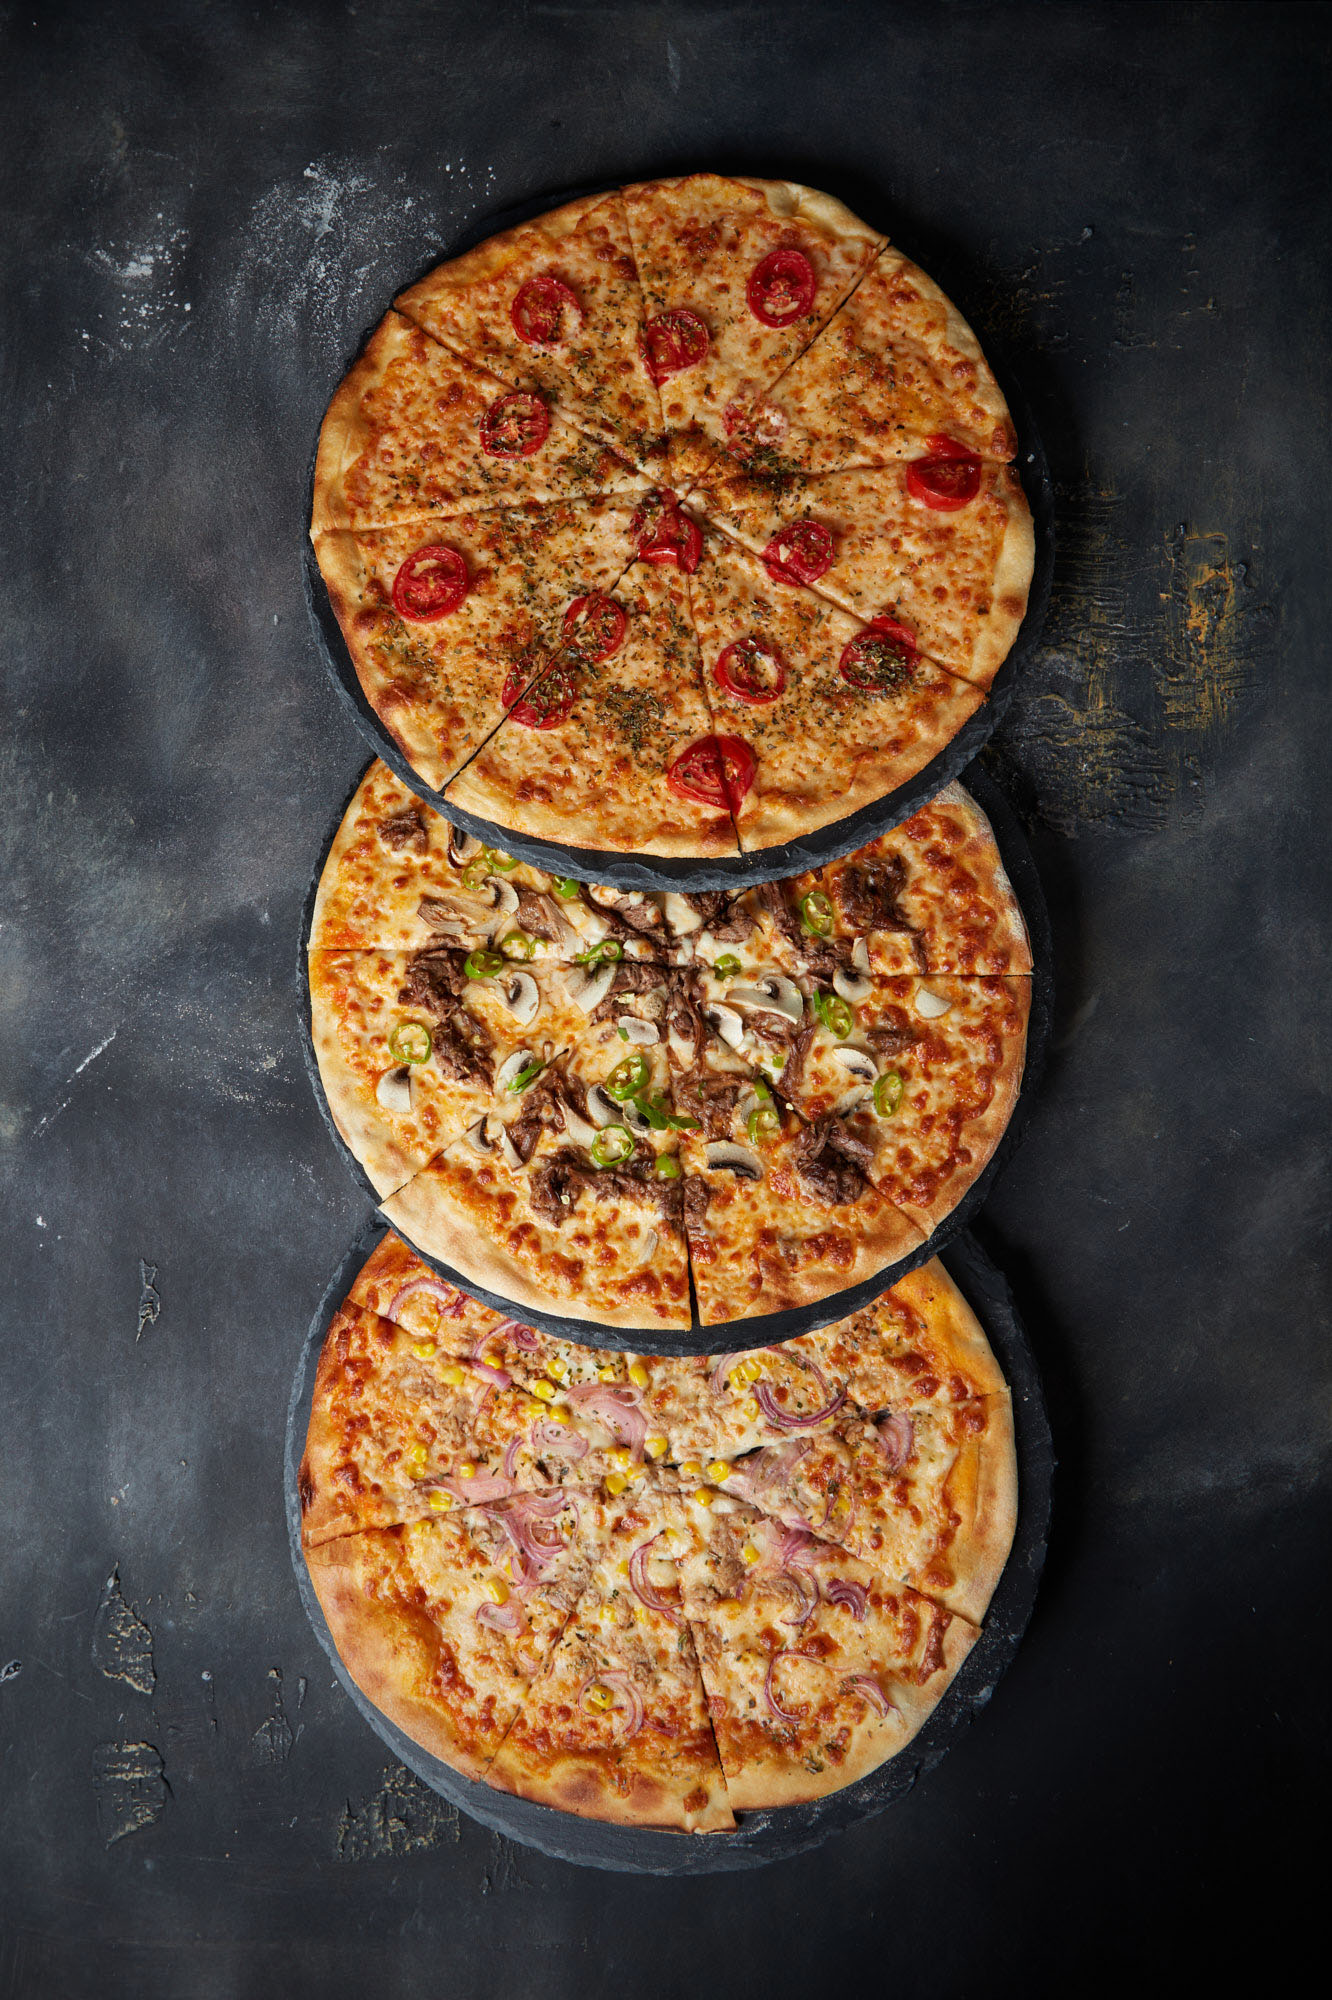 Üç pizza alt alta duruyor üstten çekilmiş bir fotoğraf.